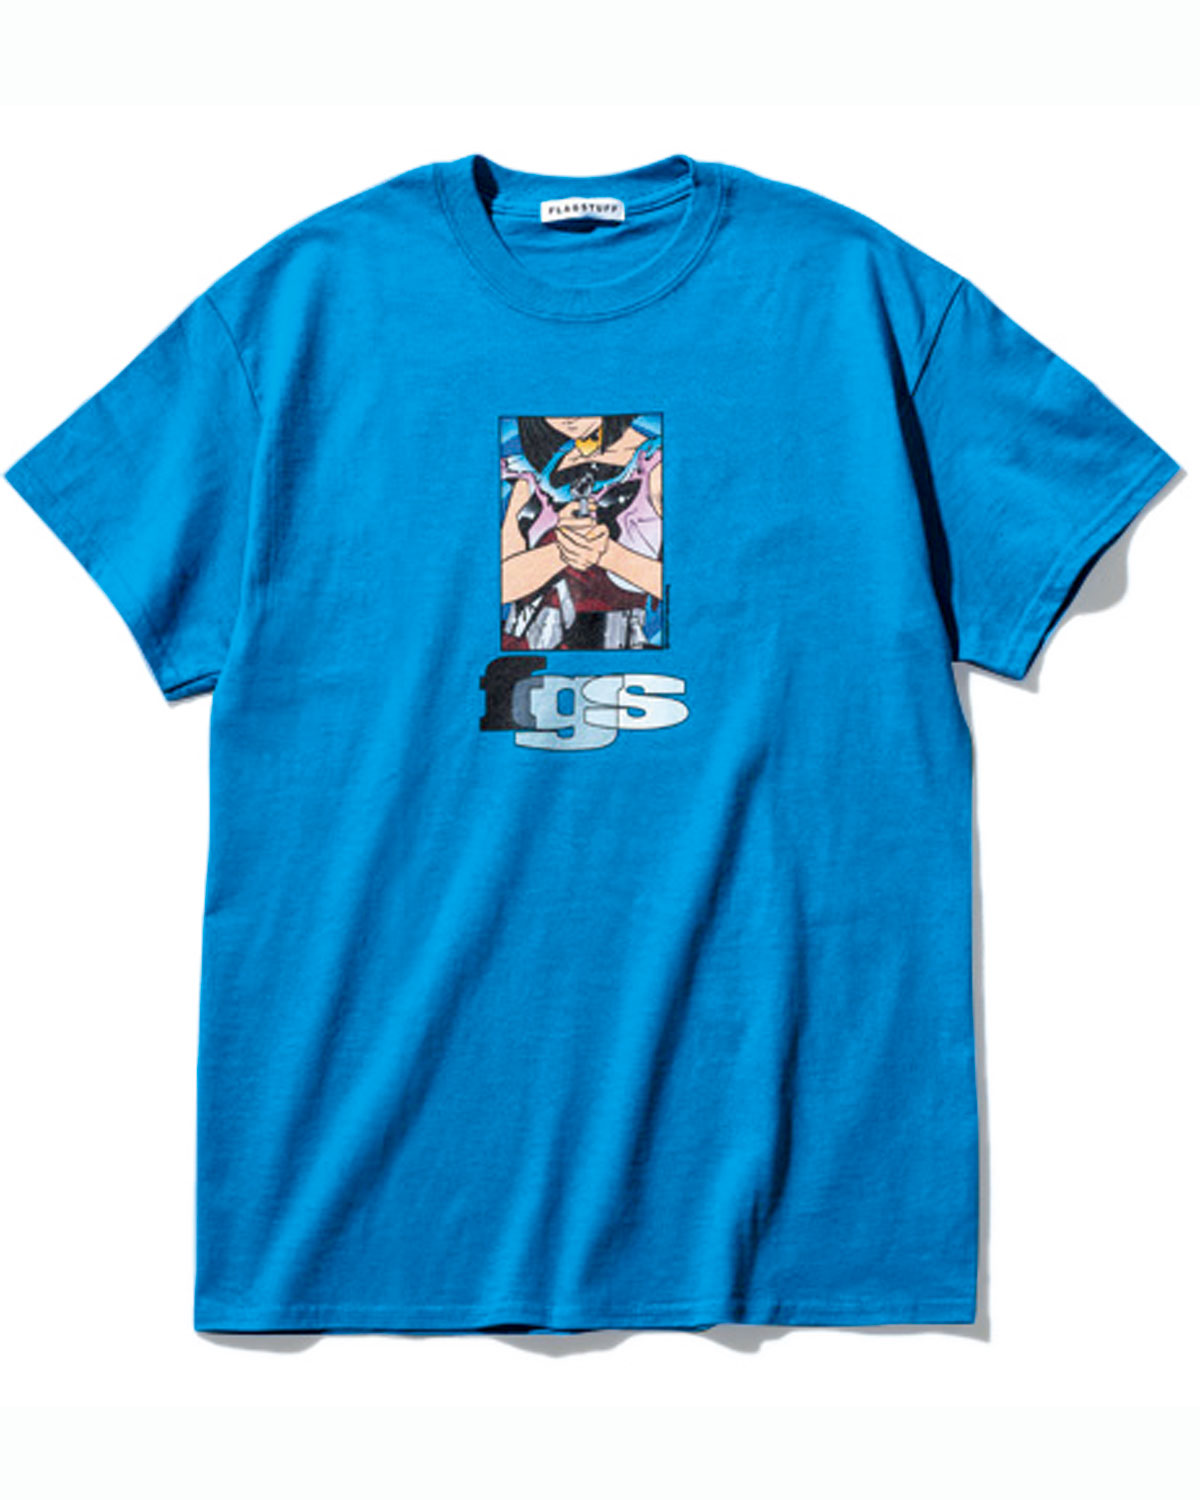 本当に流行っている Tシャツ のハナシ Vol 5一目置かれるレアなtシャツ4選 ファッション Fineboys Online